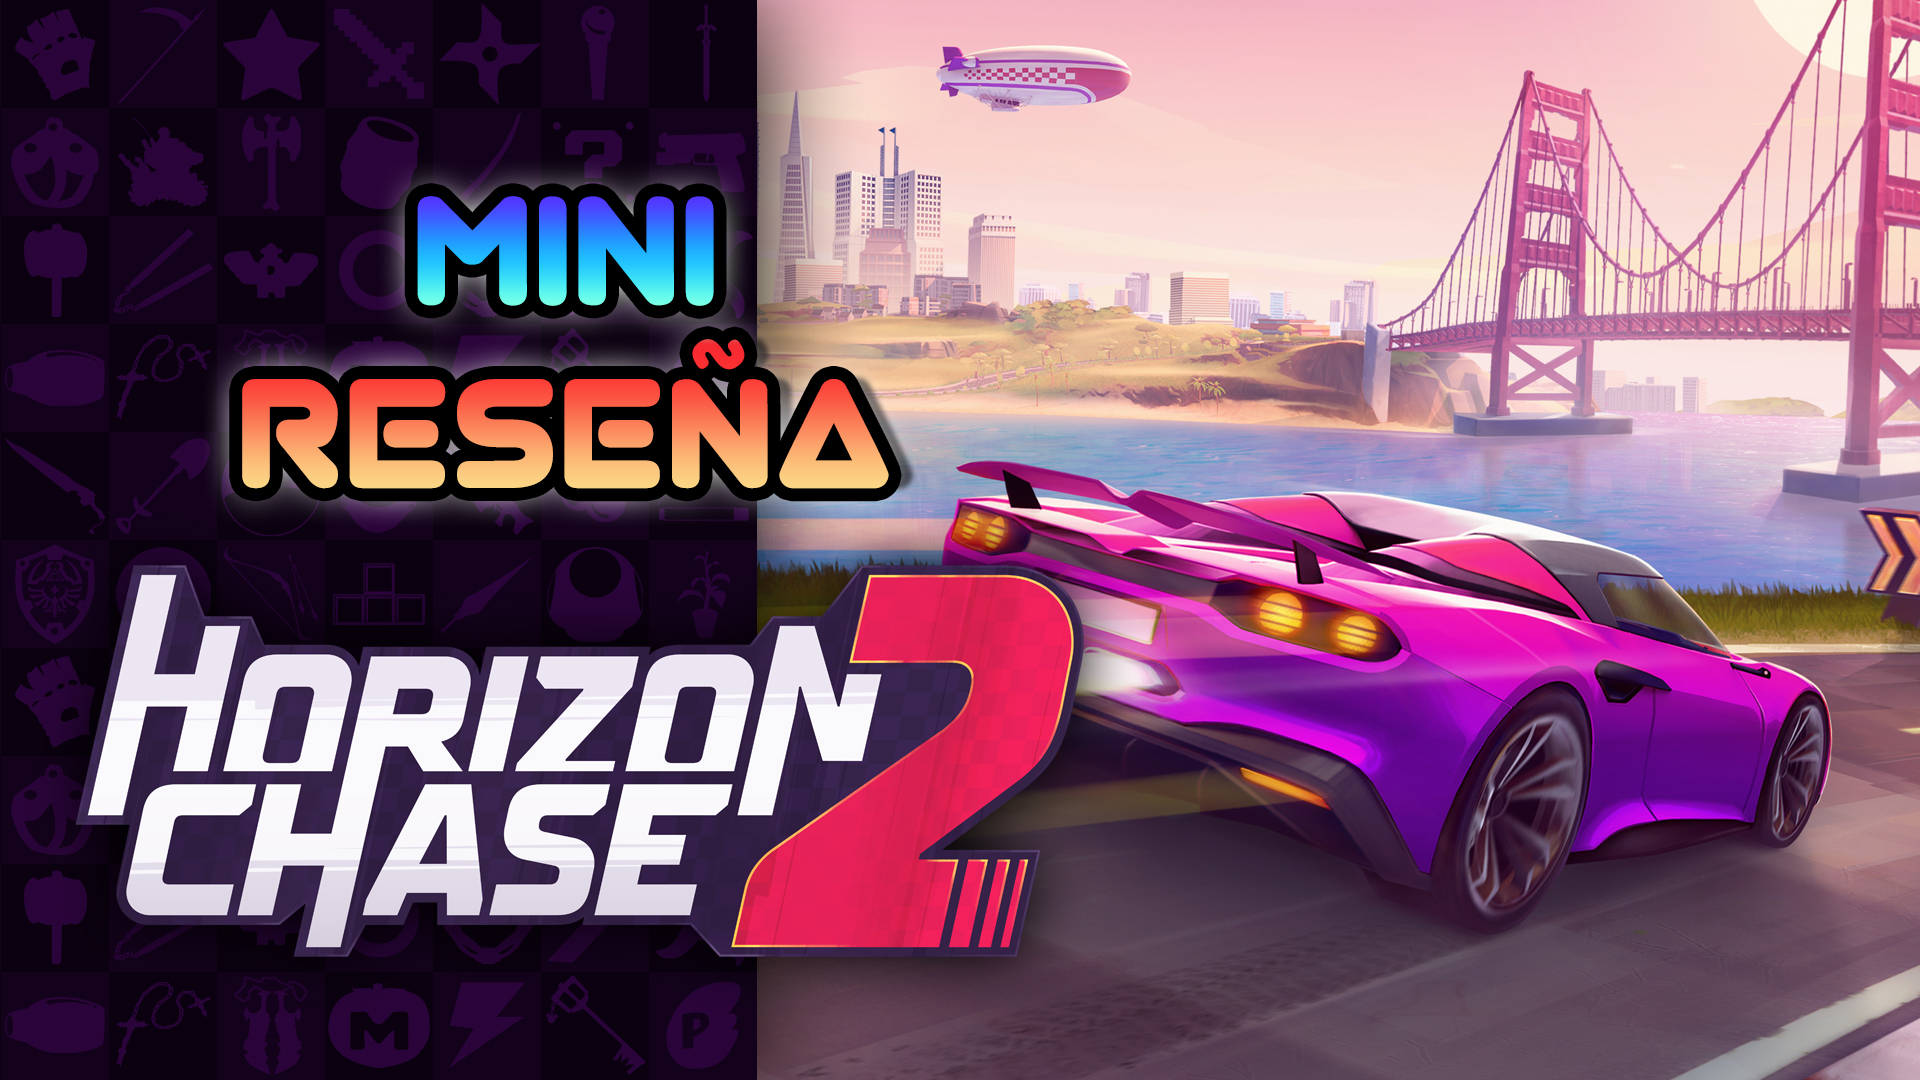 Mini Reseña Horizon Chase 2 – Carreras absolutamente arcade